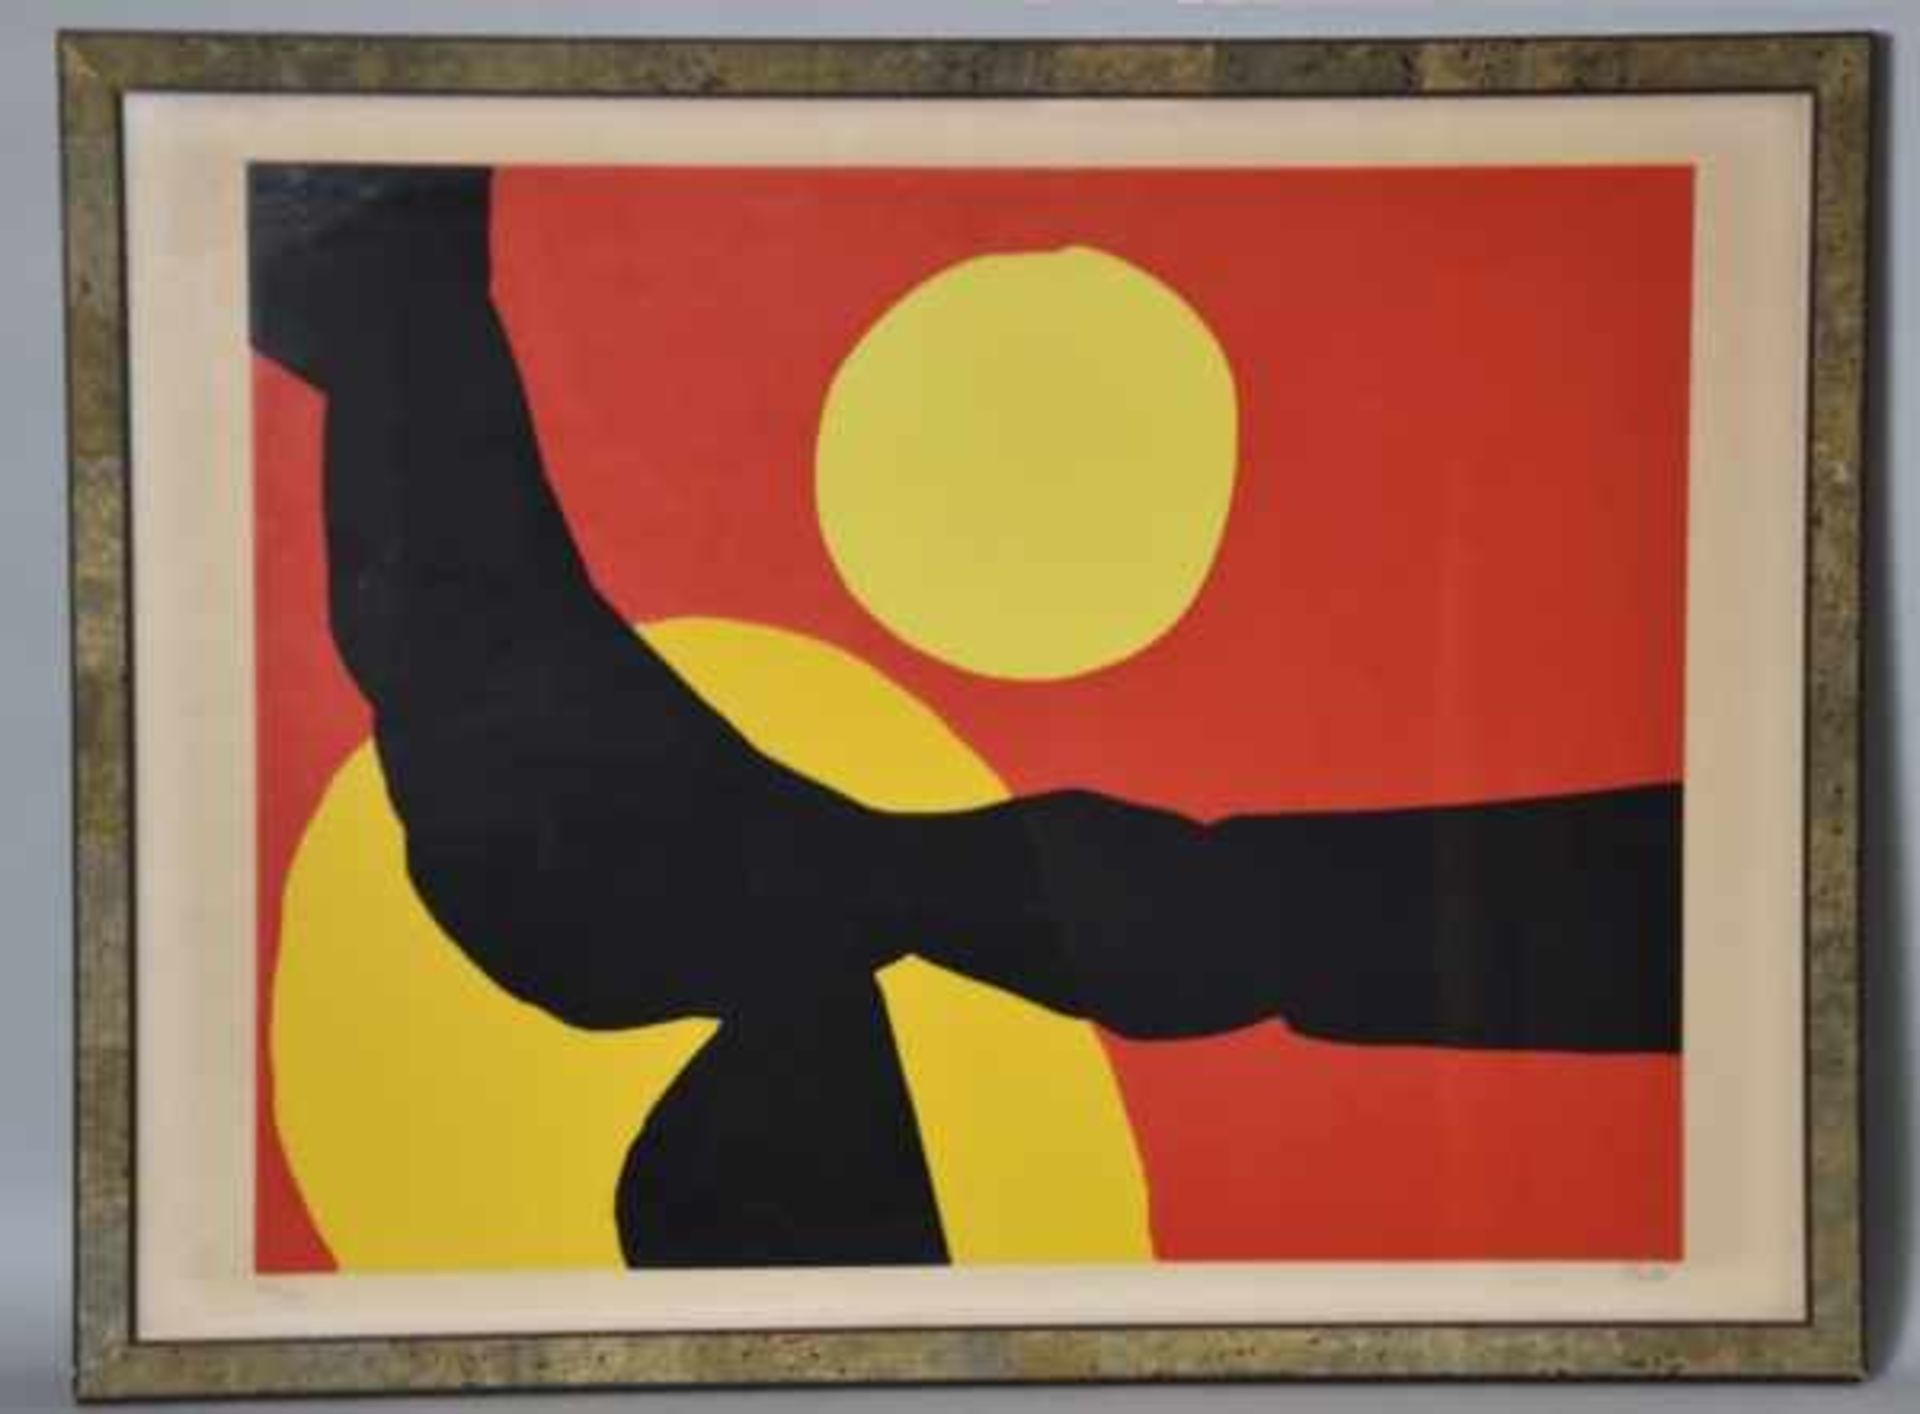 FEITO LOPEZ Luis (1929-) "Komposition in Rot, Gelb und Schwarz ", Farblitho, rechts unten - Bild 2 aus 4